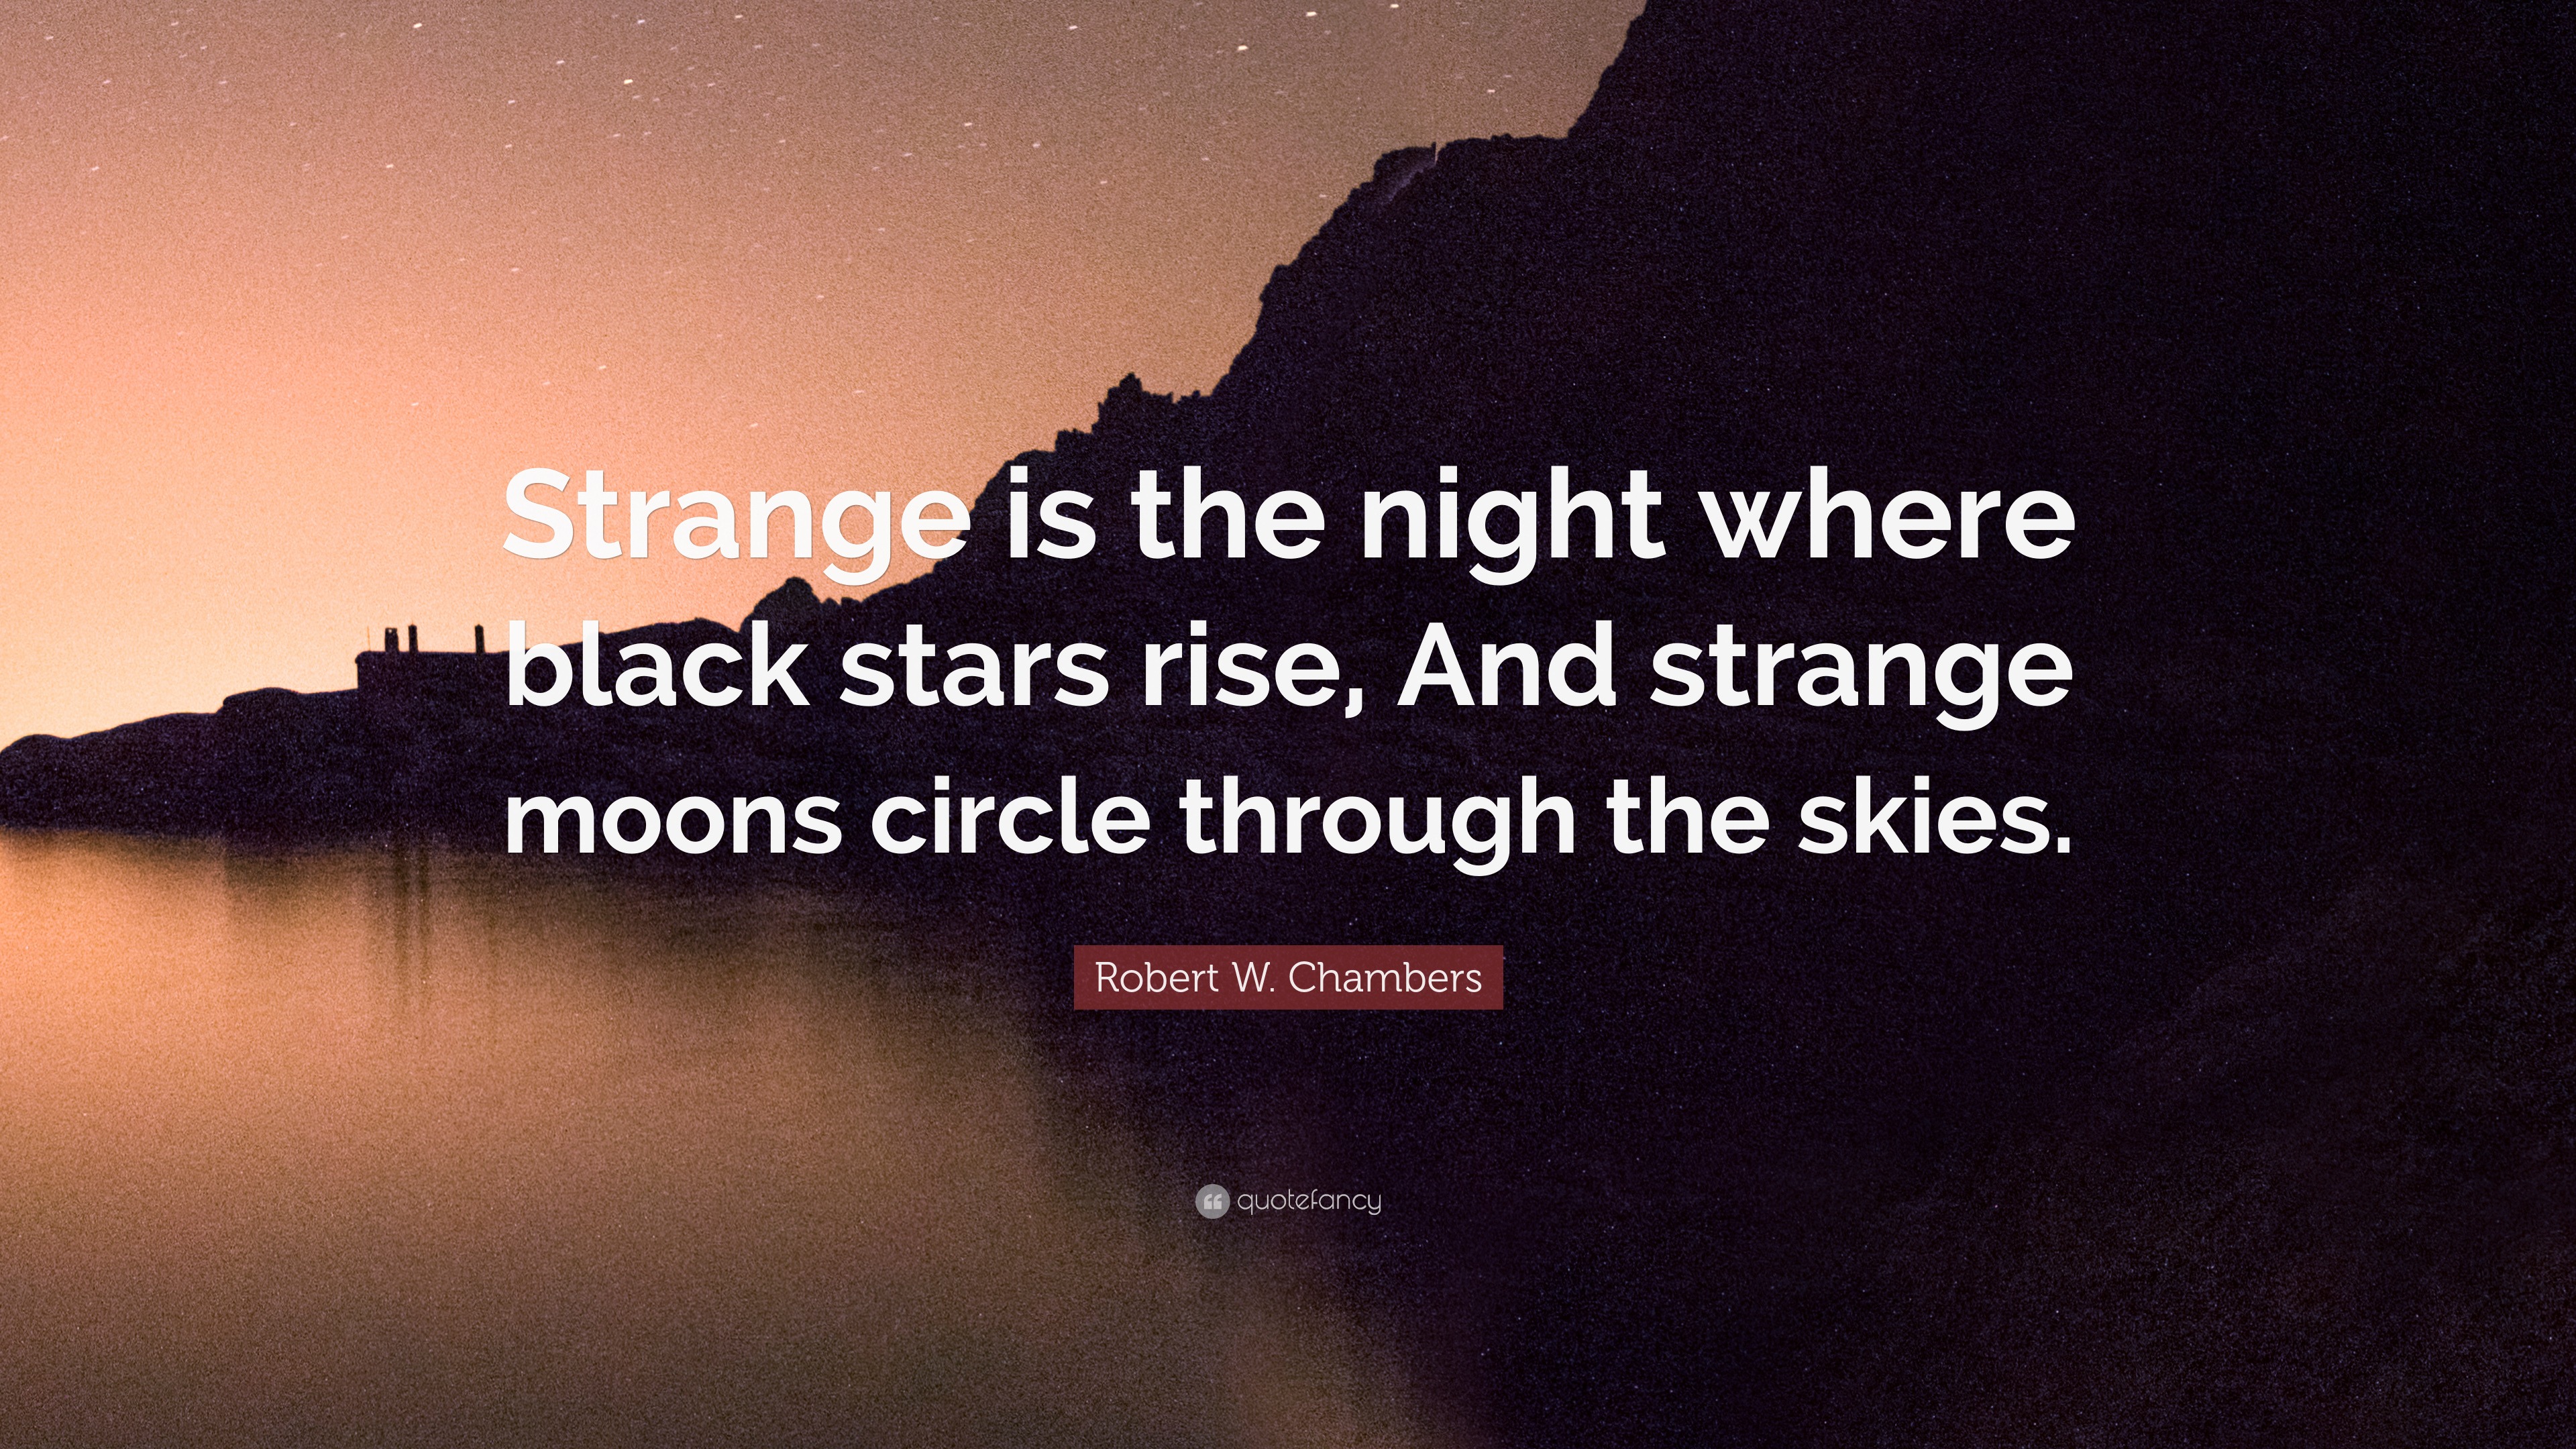 Robert W. Chambers Quote: “Strange is the night where black stars rise ...